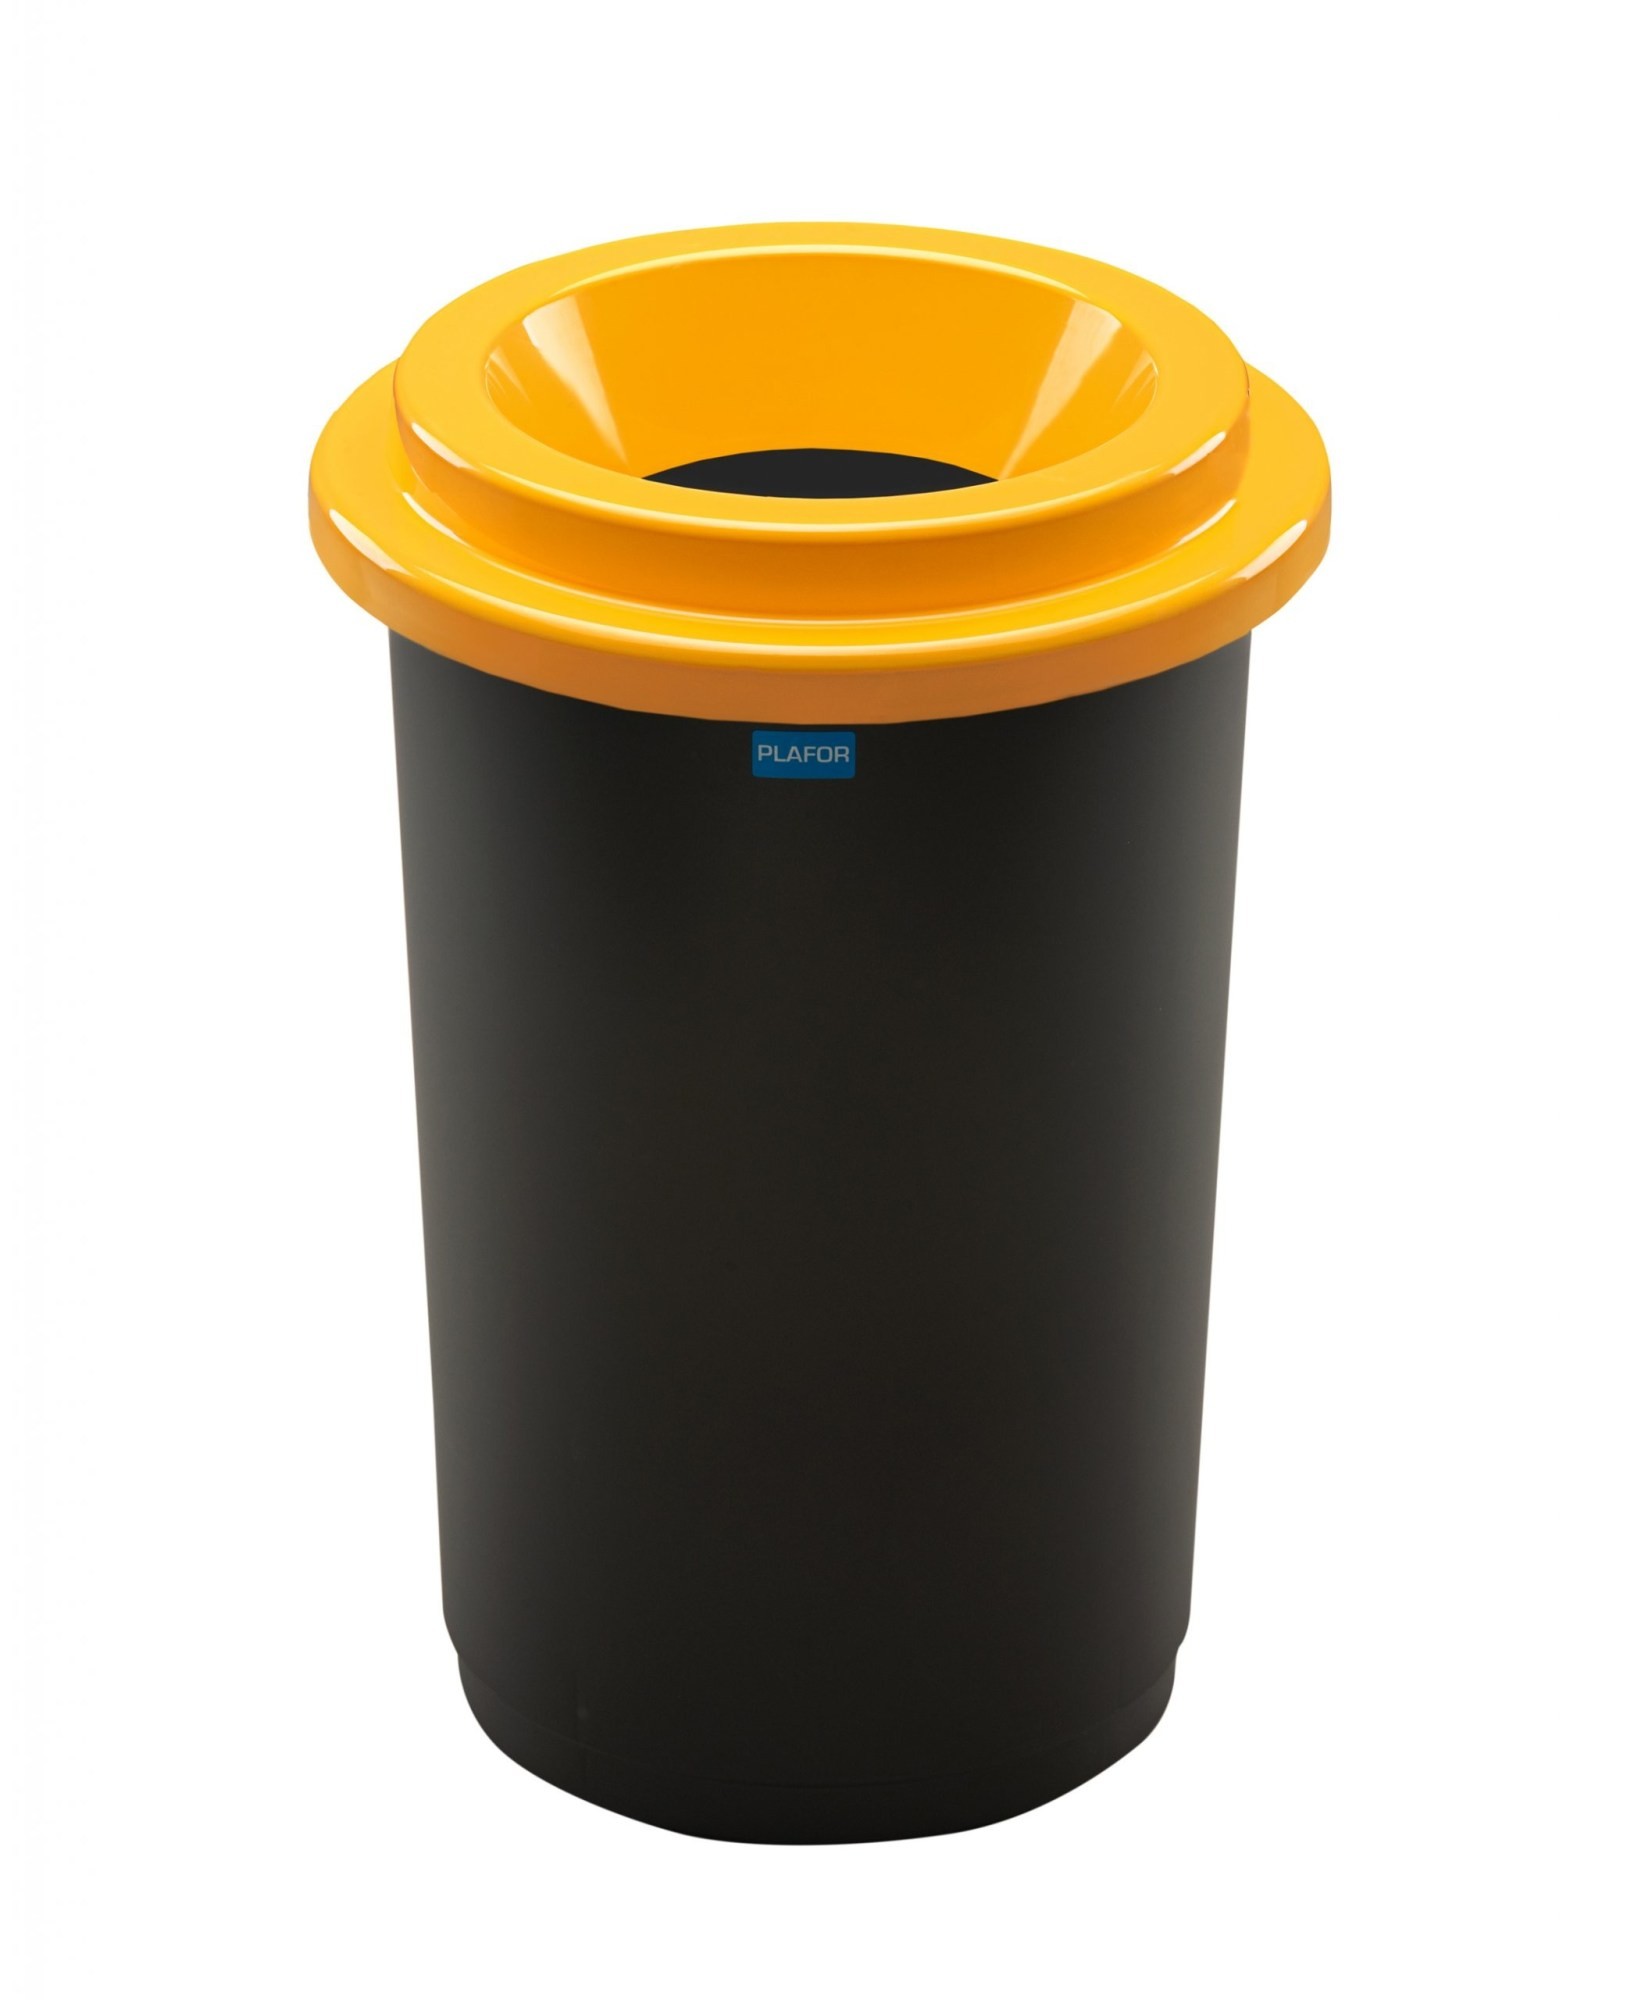 Cos plastic reciclare selectiva, capacitate 50l, PLAFOR Eco - negru cu capac galben - plastic